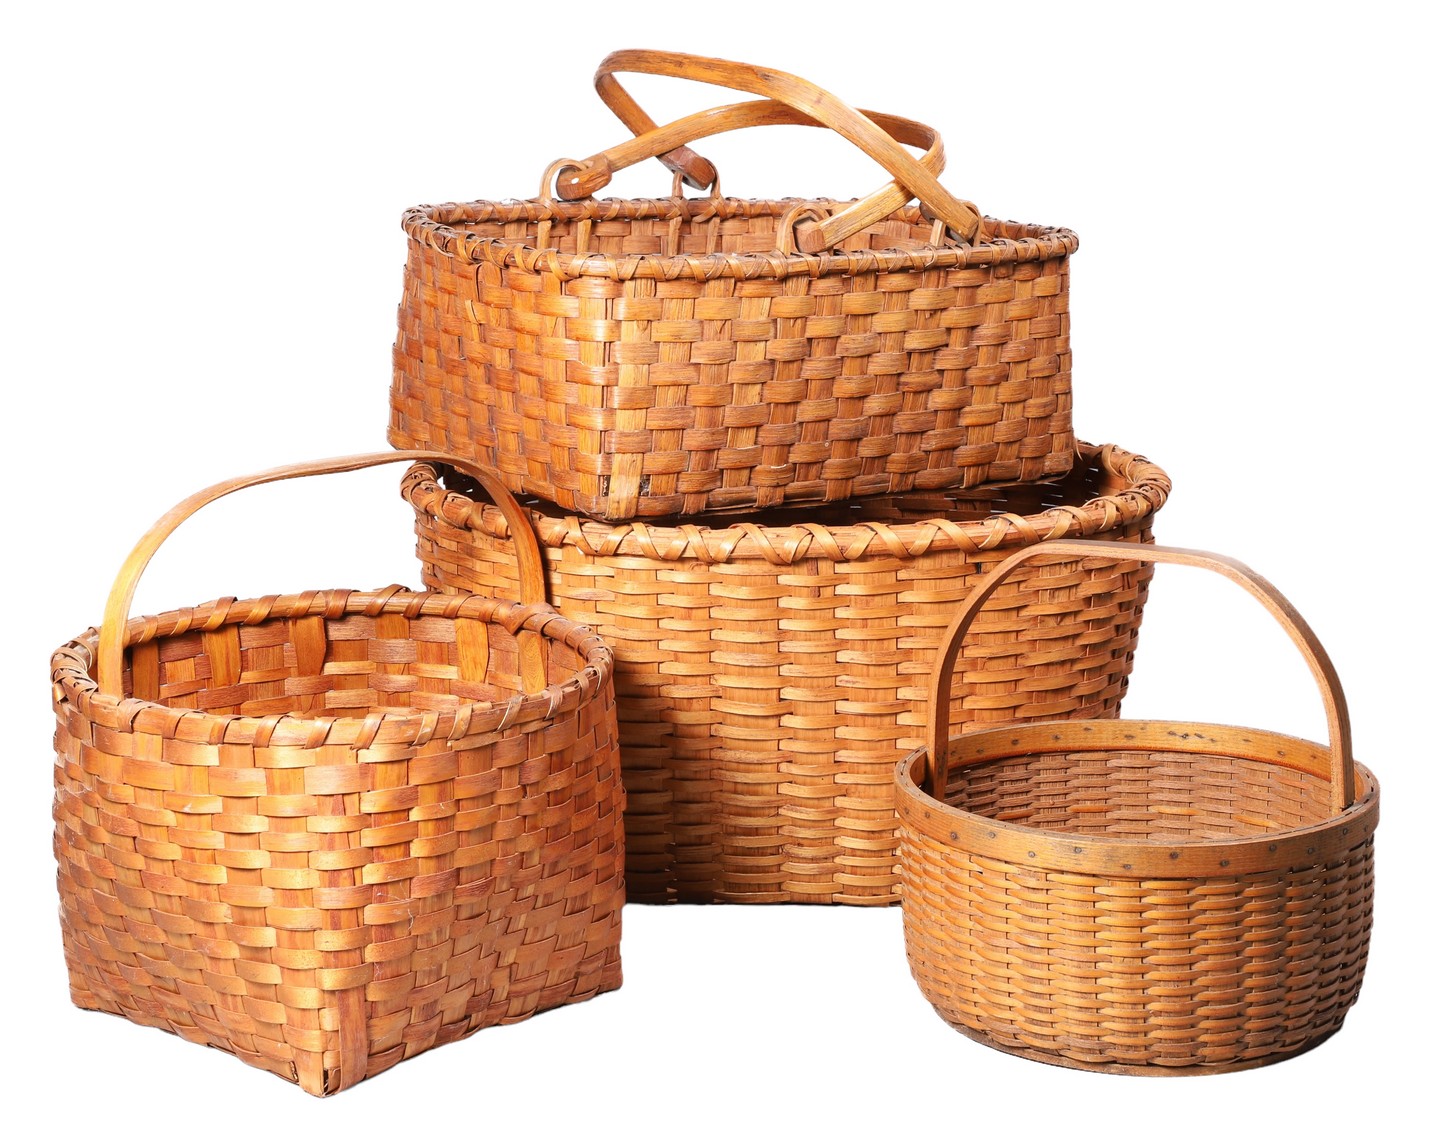  4 Splint baskets to include square 2e092b